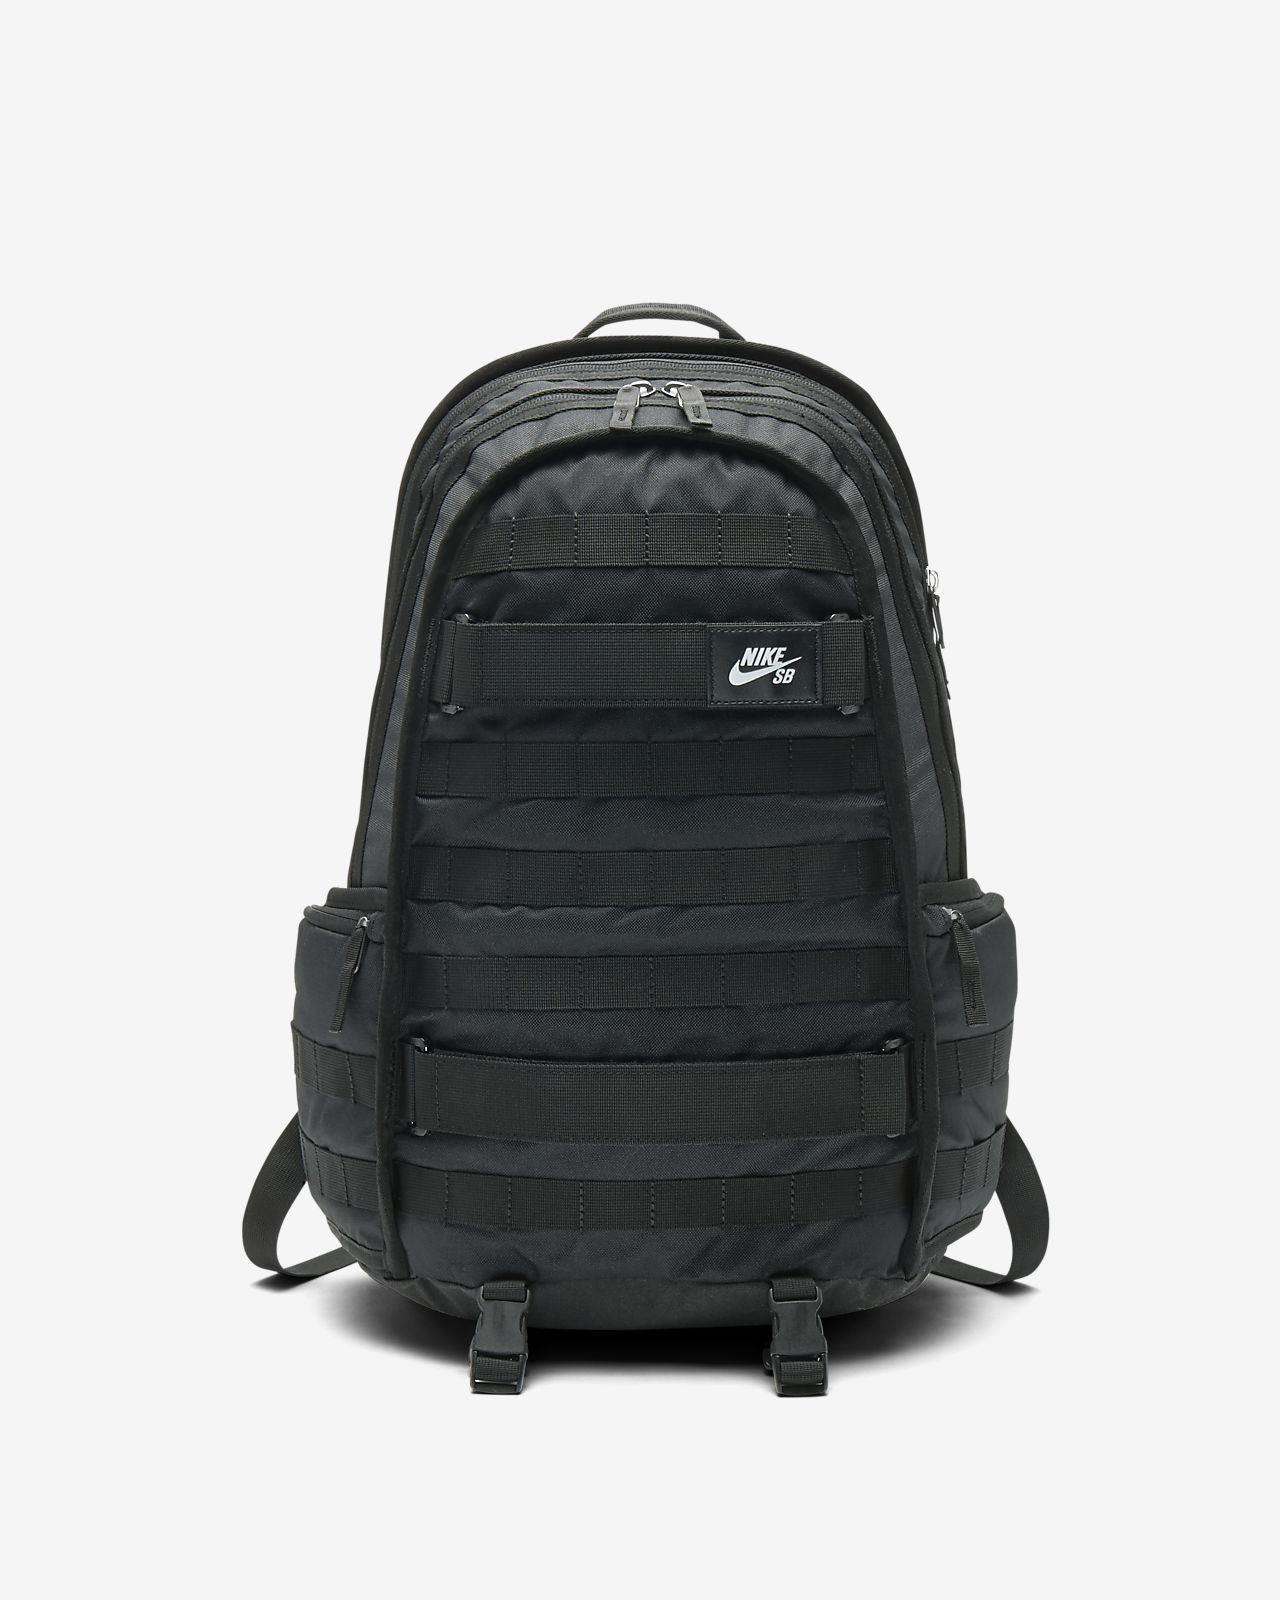 [最も欲しかった] nike sb rpm backpack with skateboard 110553 - Mbaheblogjpsuq1